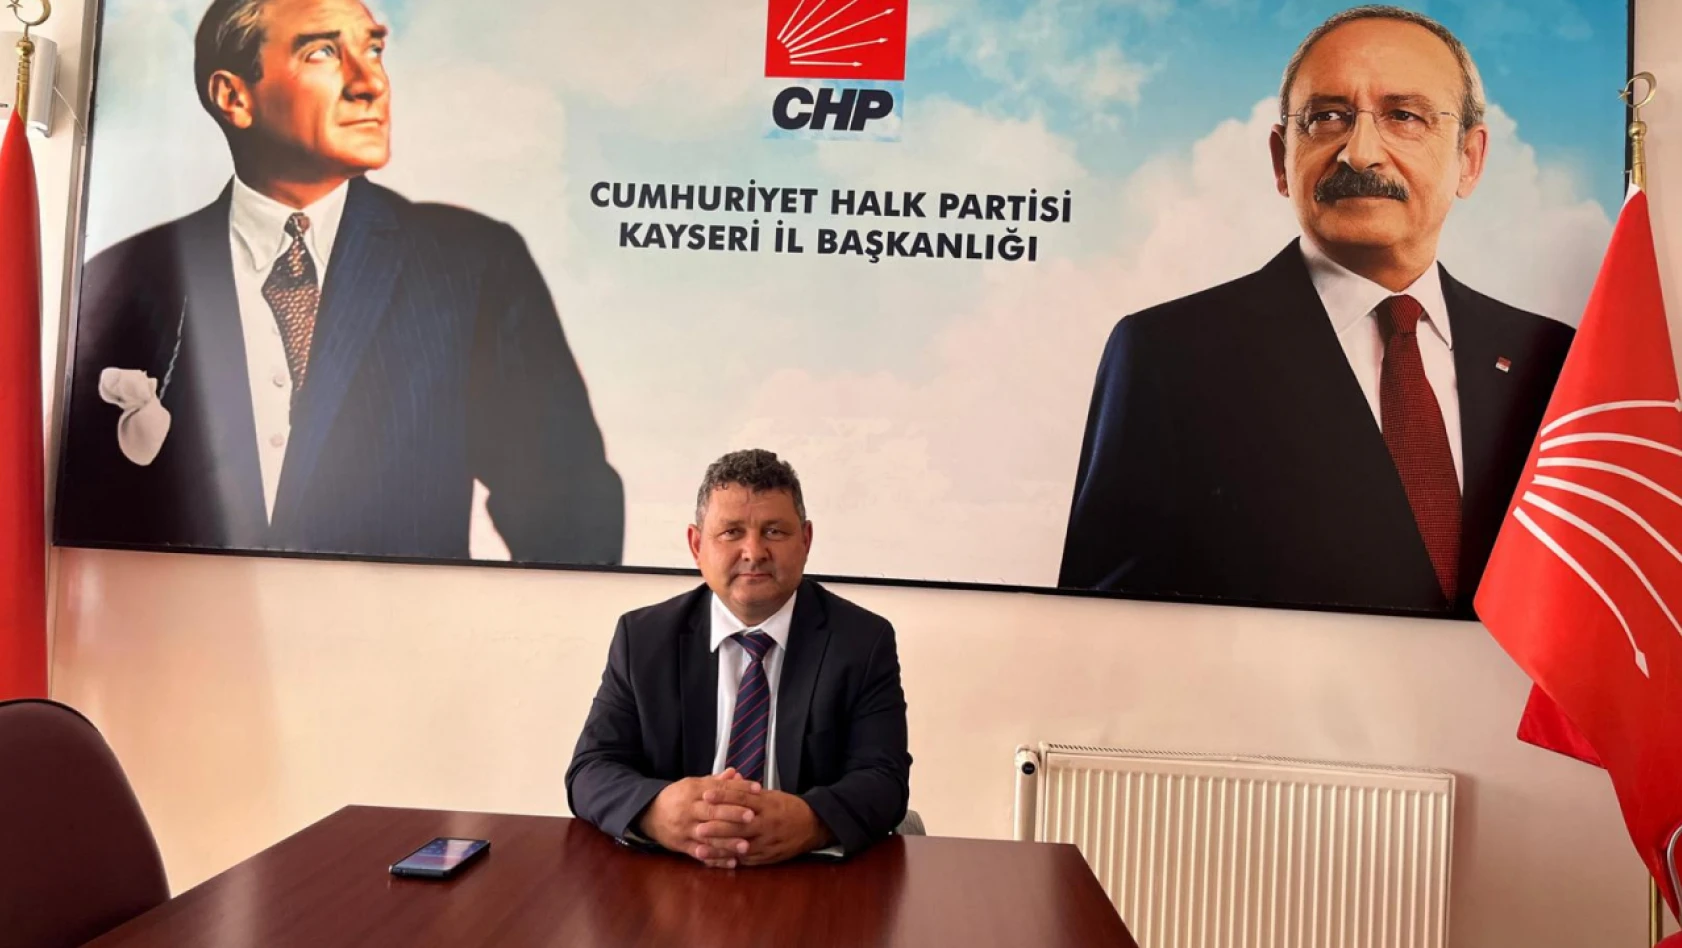 CHP Kayseri'den acil düzenleme çağrısı!